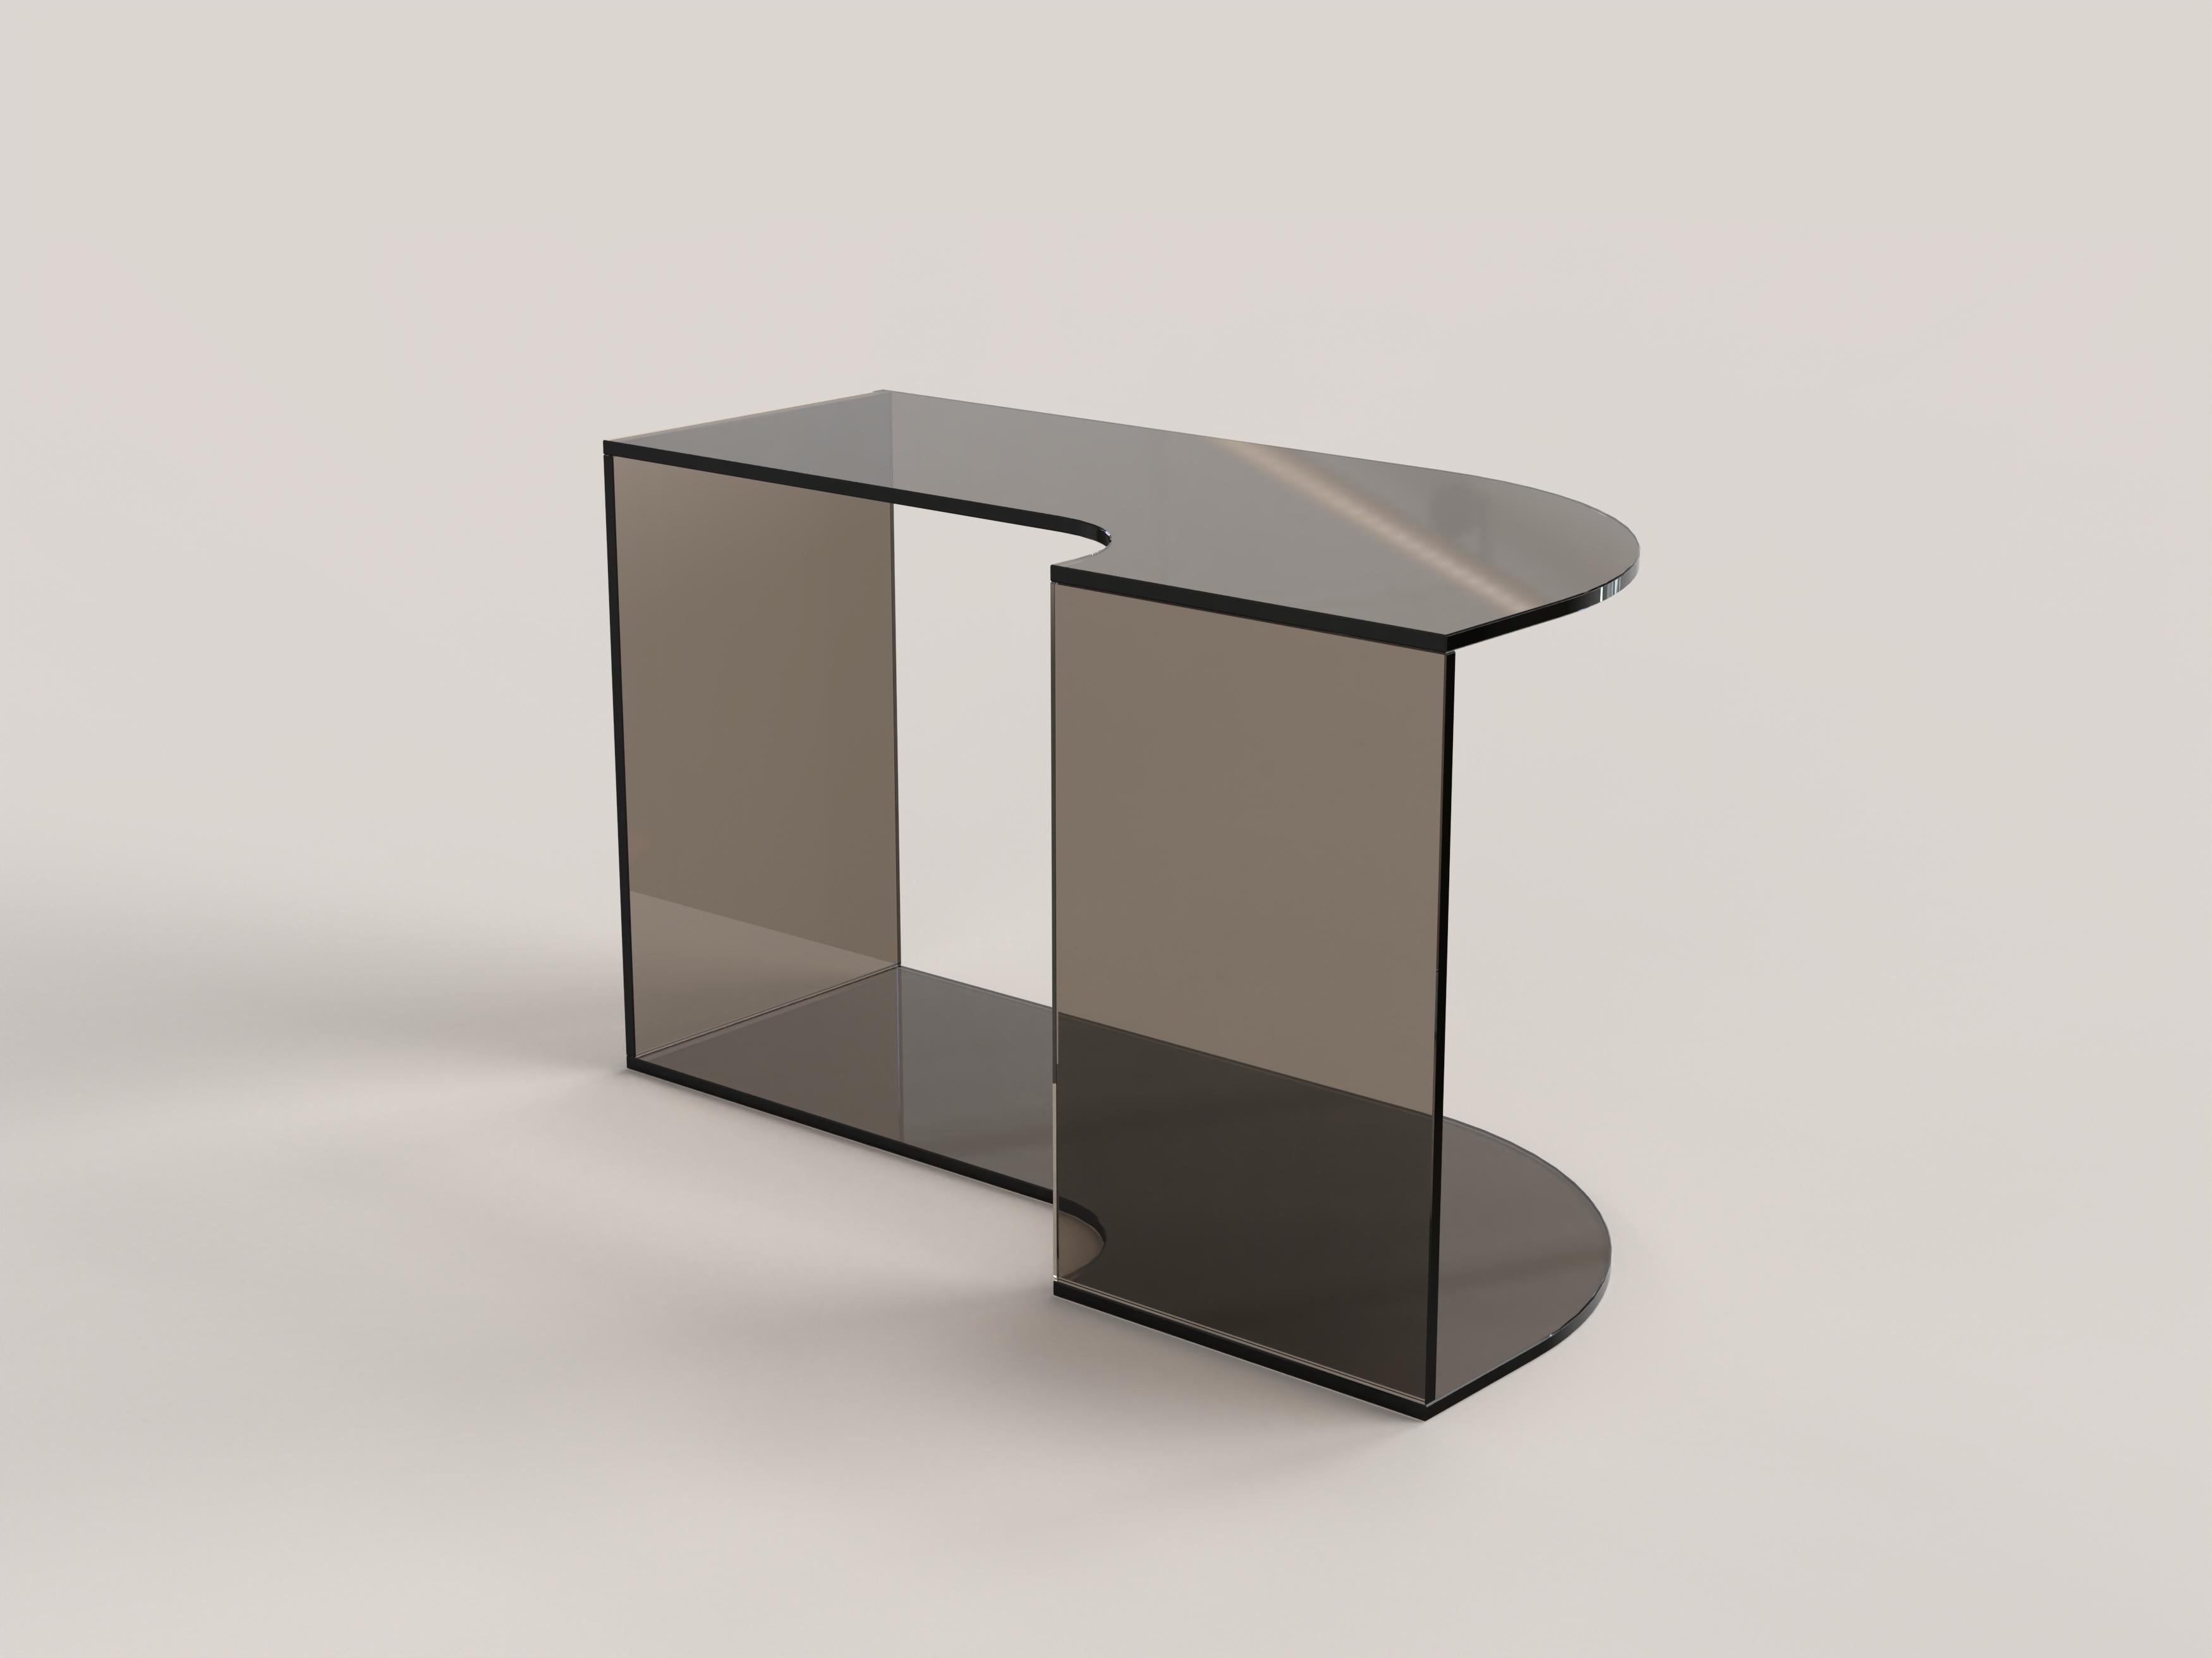 Italian Contemporary Limited Edition Bronze Glass Table, Quarter V2 by Edizione Limitata For Sale